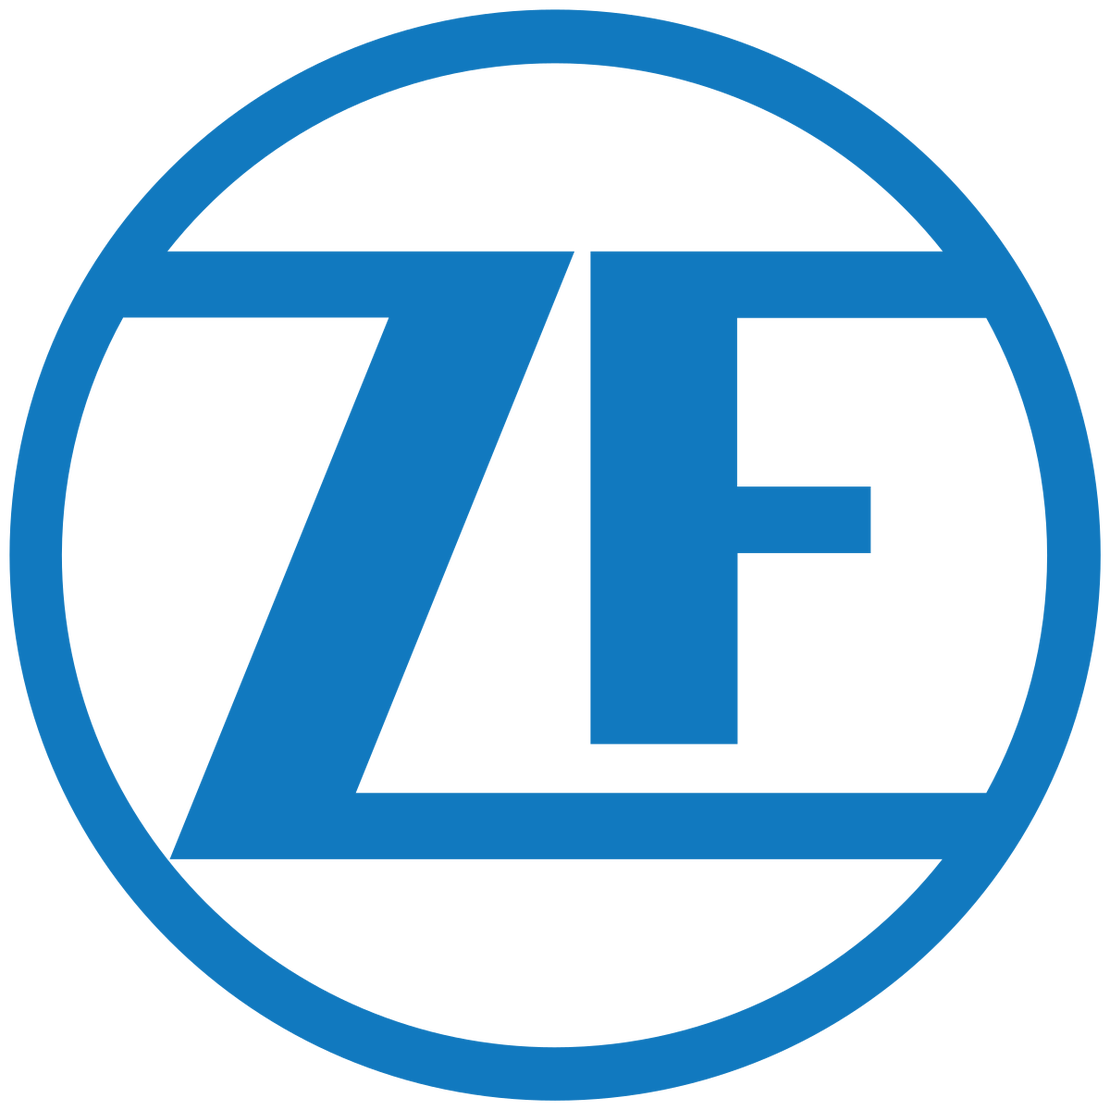 Logo ZF Friedrichshafen